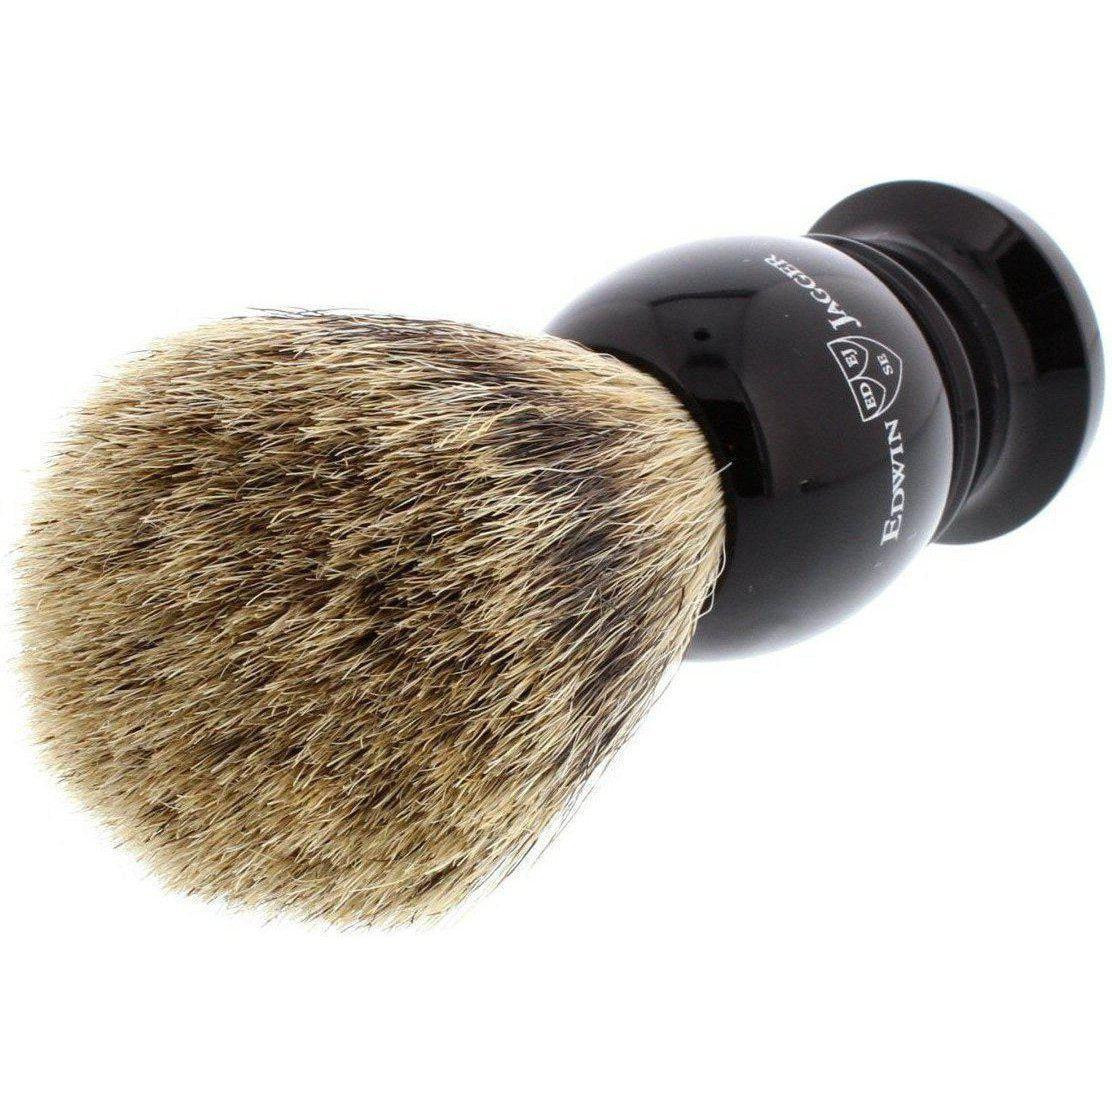 Product image 2 for Edwin Jagger Best Badger Shaving Brush, Medium, Black